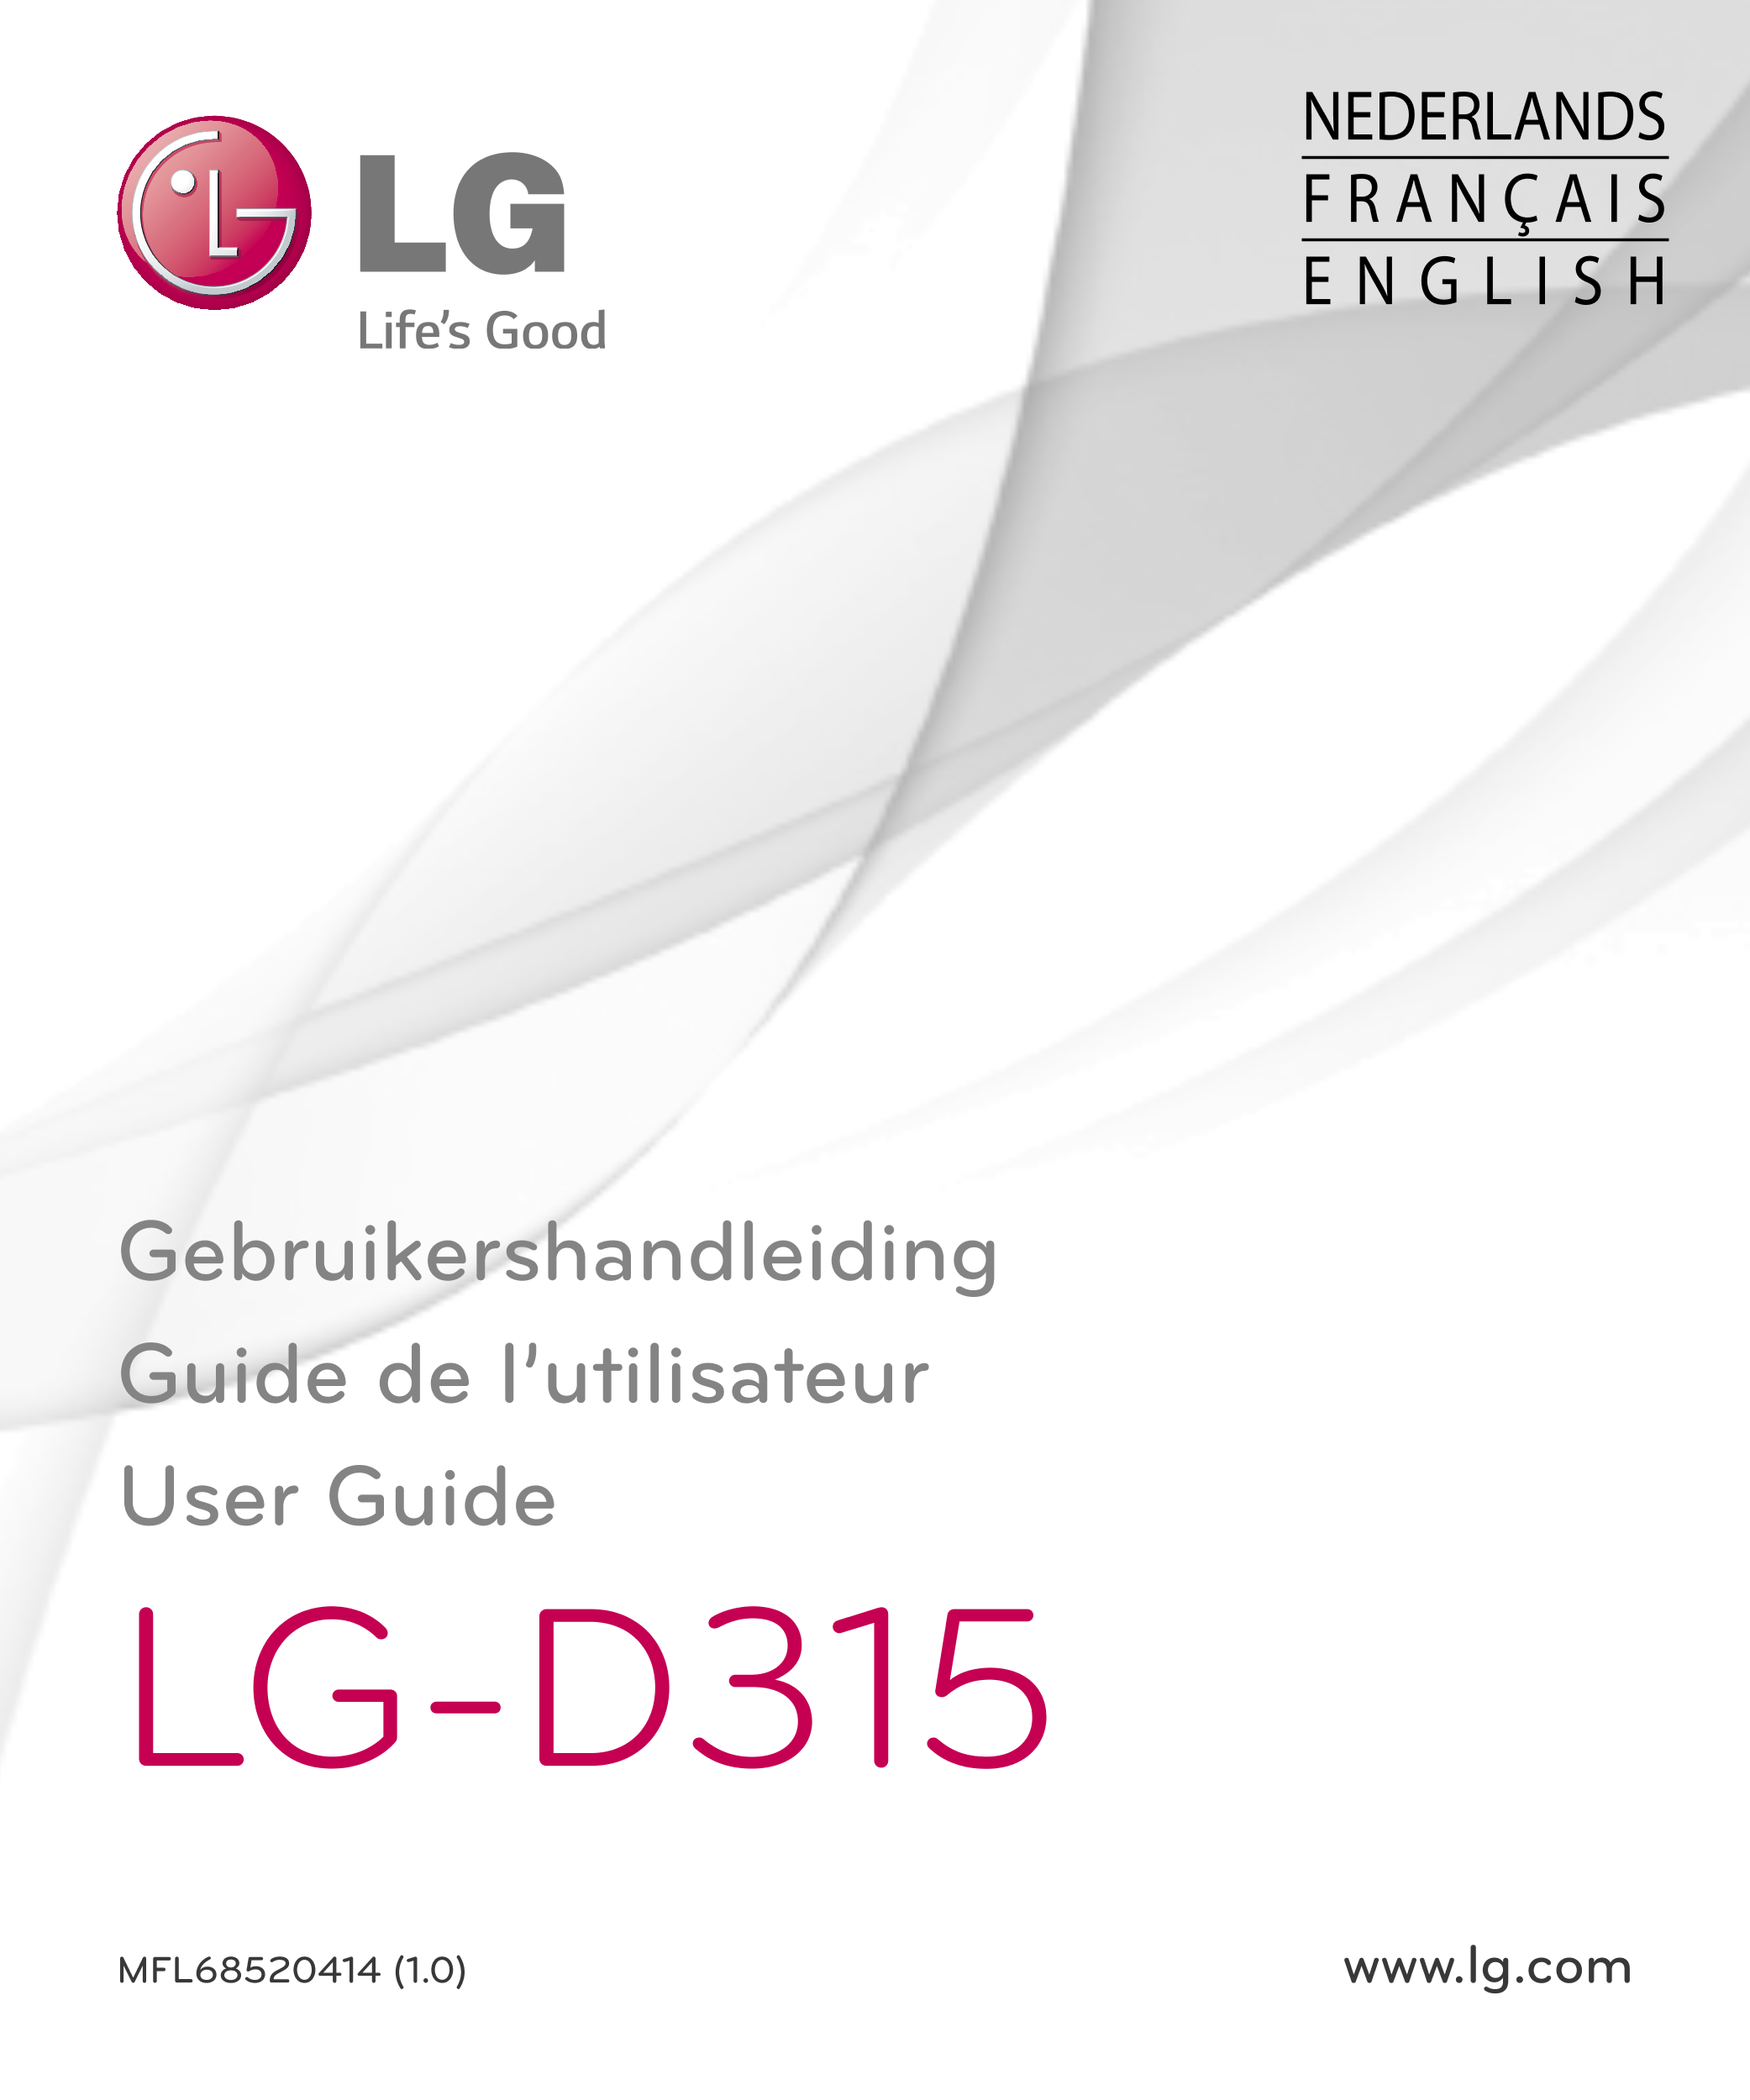 NEDERLANDS
F R A N Ç A I S
E N G L I S H
Gebruikershandleiding
Guide de l’utilisateur
User Guide
LG-D315
MFL68520414 (1.0) www.l